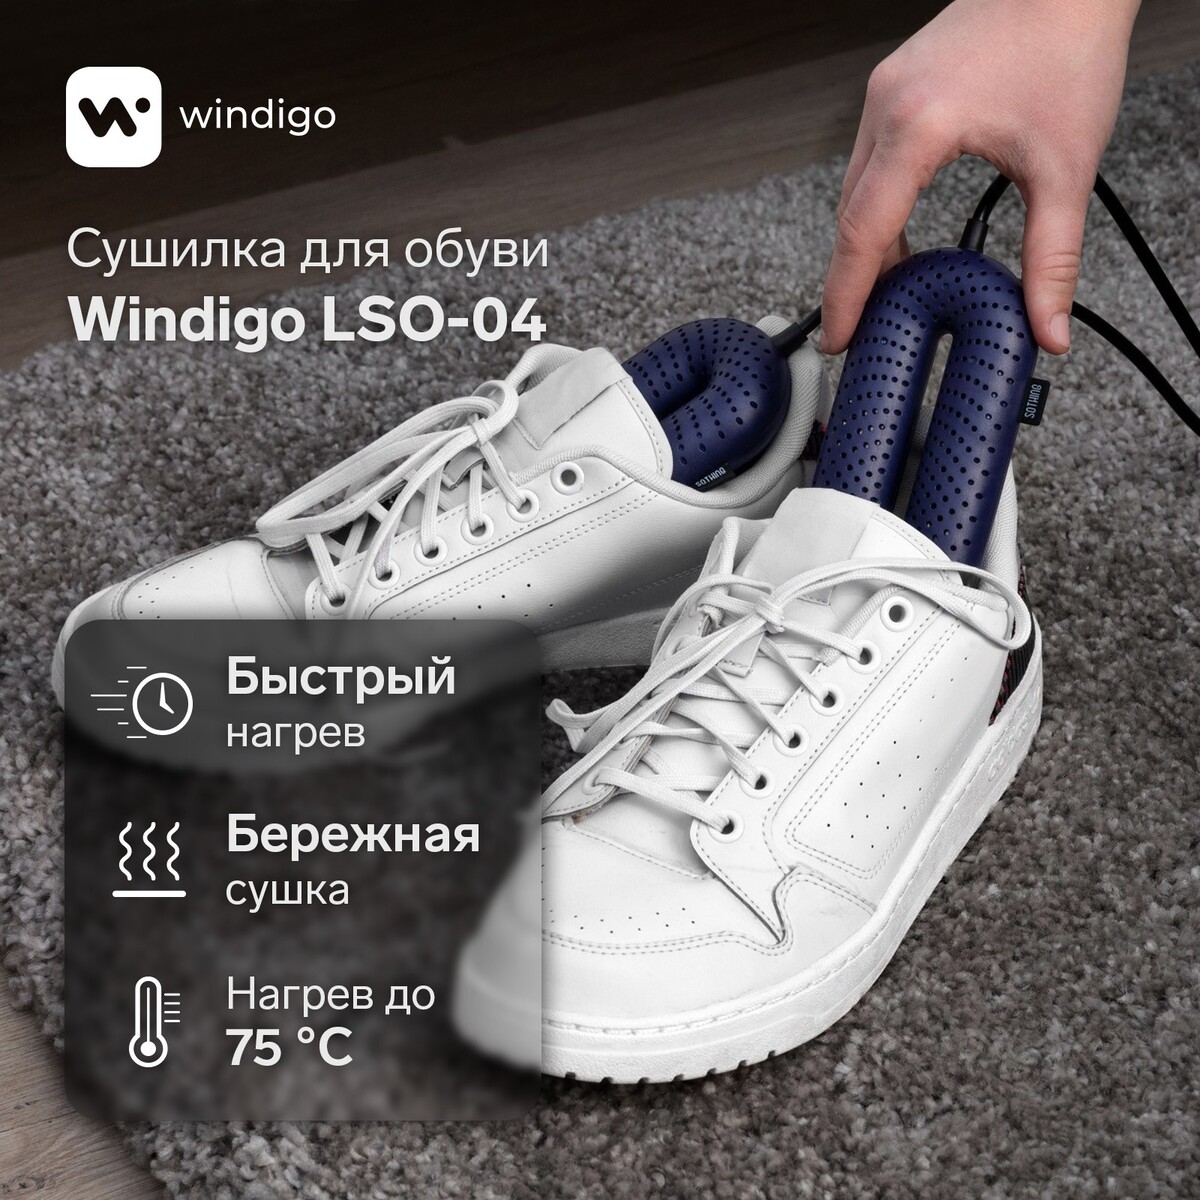 Сушилка для обуви windigo lso-04, 17 см, 20 вт, индикатор, синяя сушилка для обуви irit ir 3700 12 вт электрическая 220 в